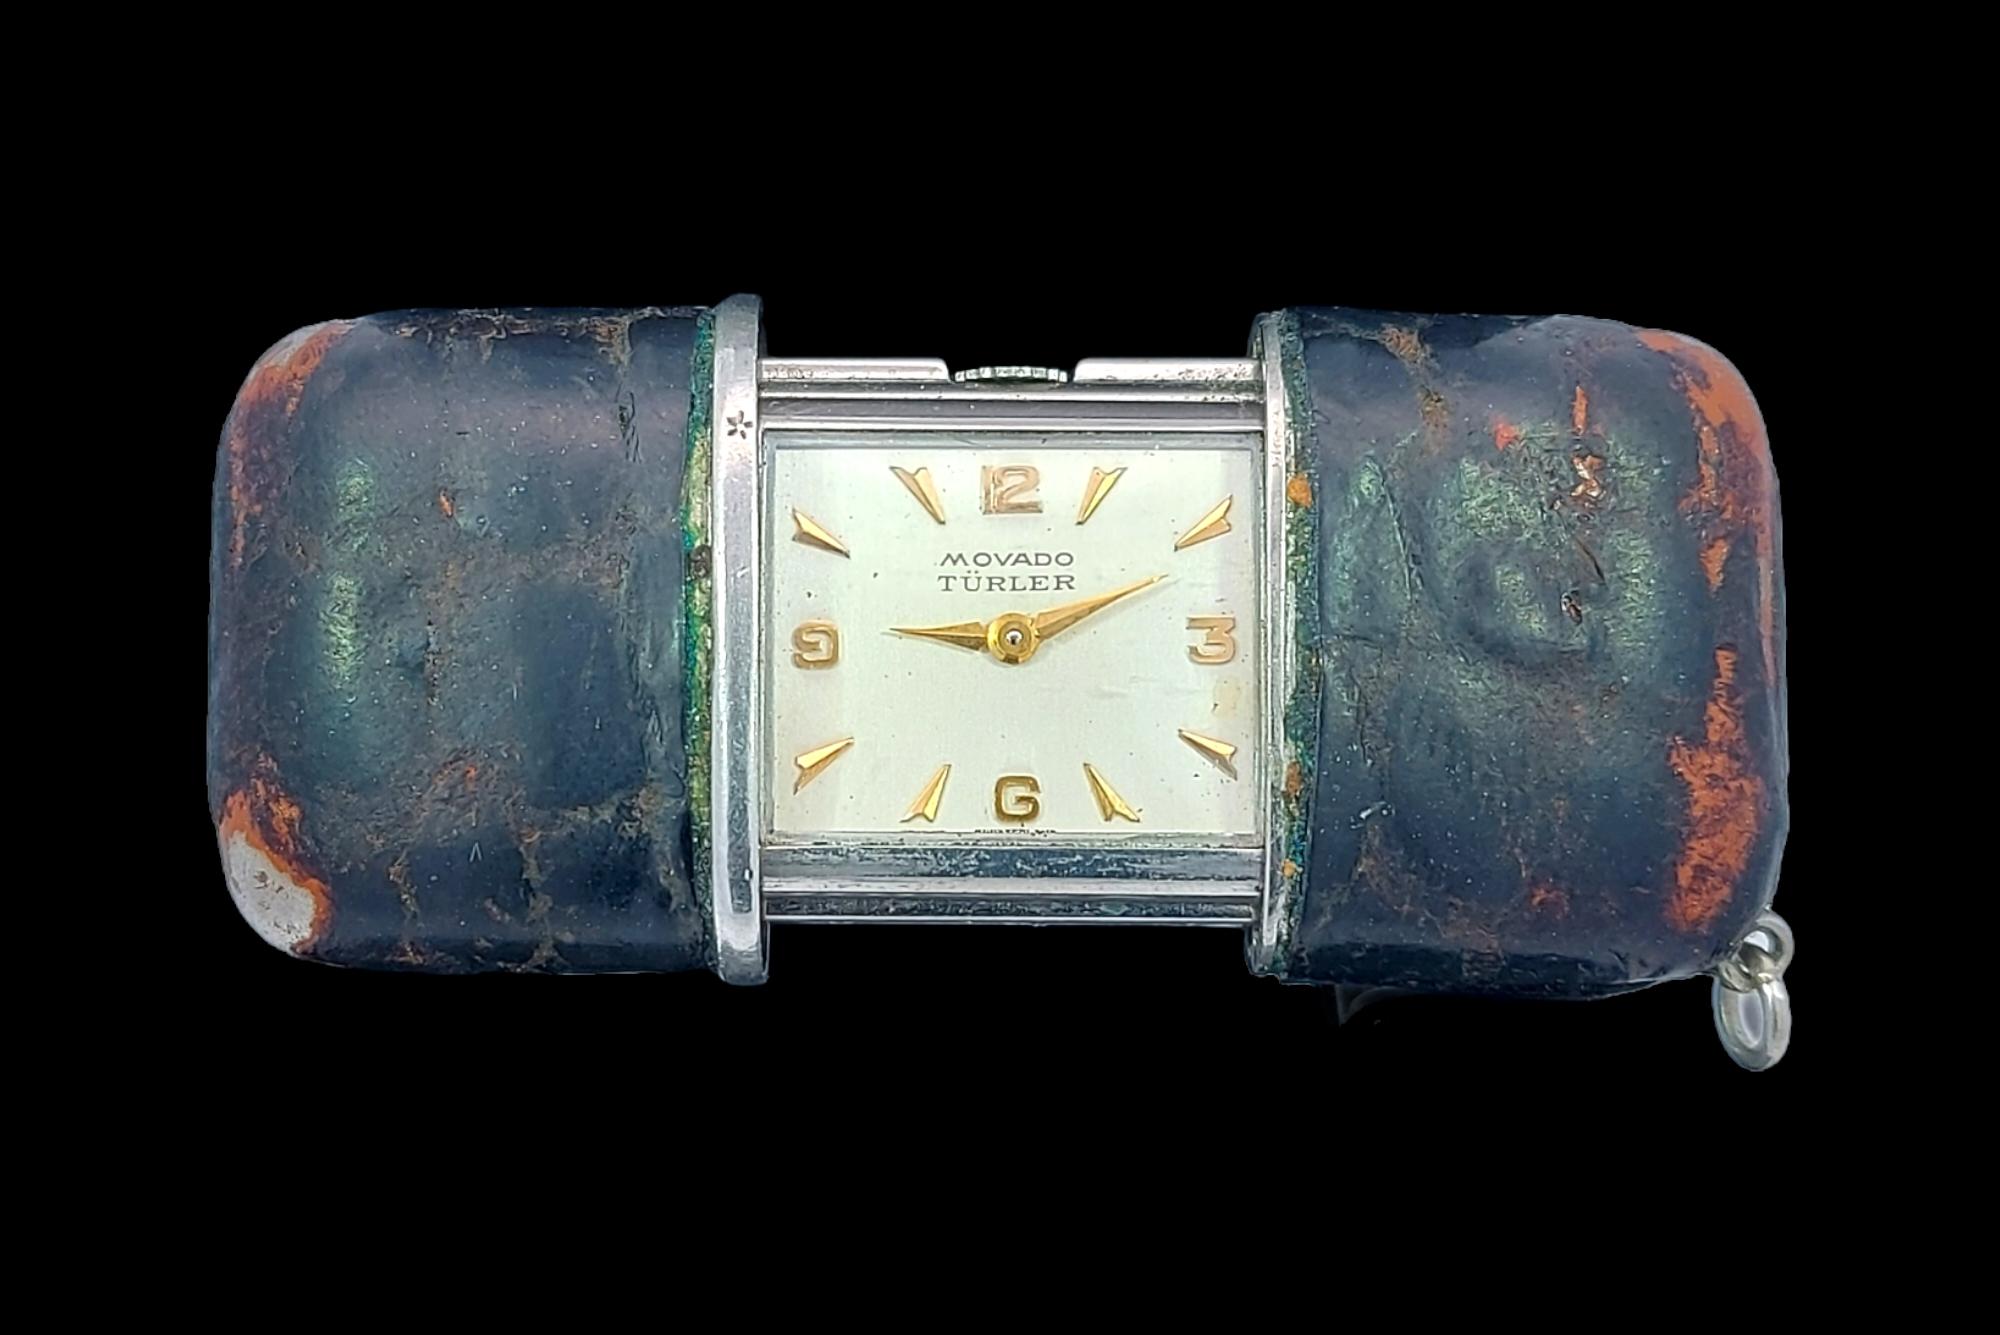 Turler Movado, Slide Travel Watch-Clock, Handtaschenuhr, mit Ständer.

Dieses Exemplar ist kleiner als üblich und extrem selten und sammelwürdig.

Abmessungen: 40,5 mm geschlossen, 61 mm offen x 26,3 mm x 12,9 mm 

Gesamtgewicht: 40,7 Gramm / 1.440